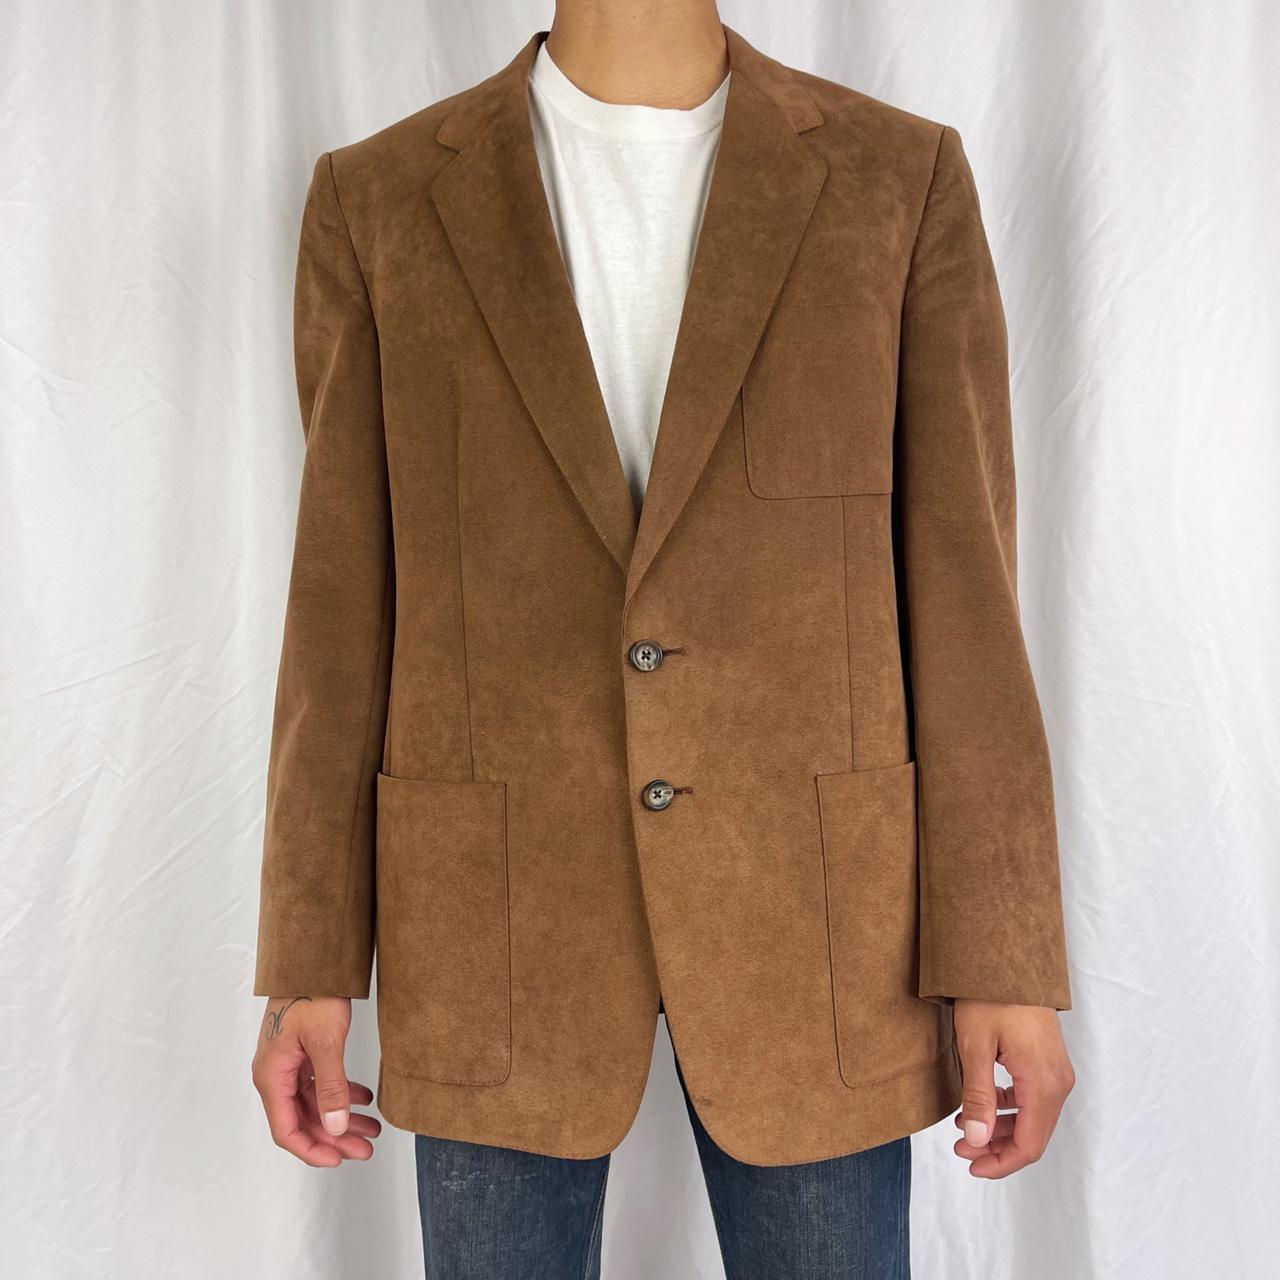 American Vintage Men's Tan and Brown Jacket